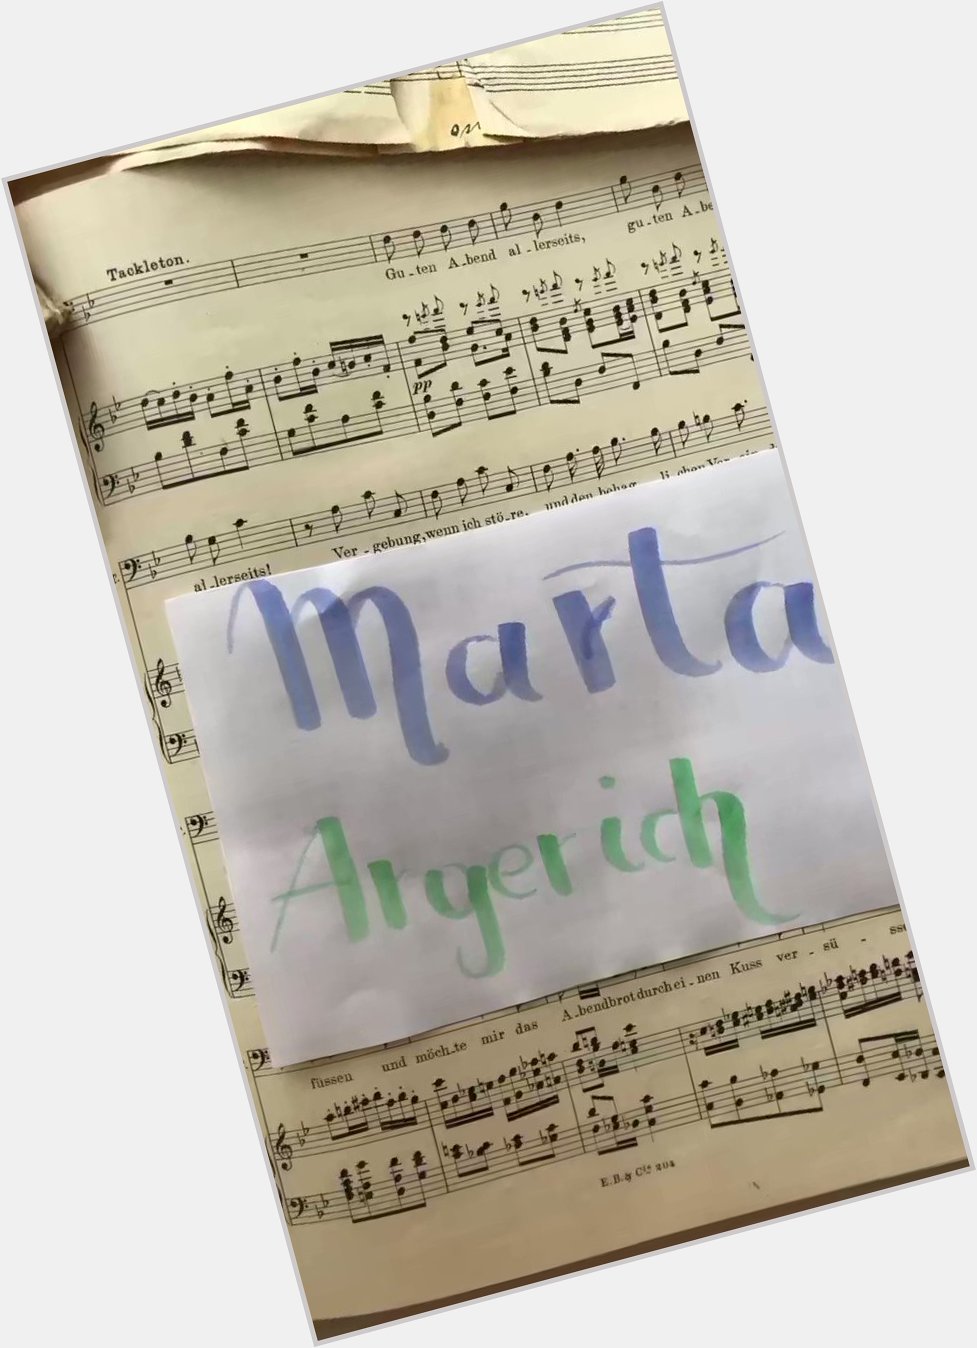 Happy birthday Martha Argerich! 